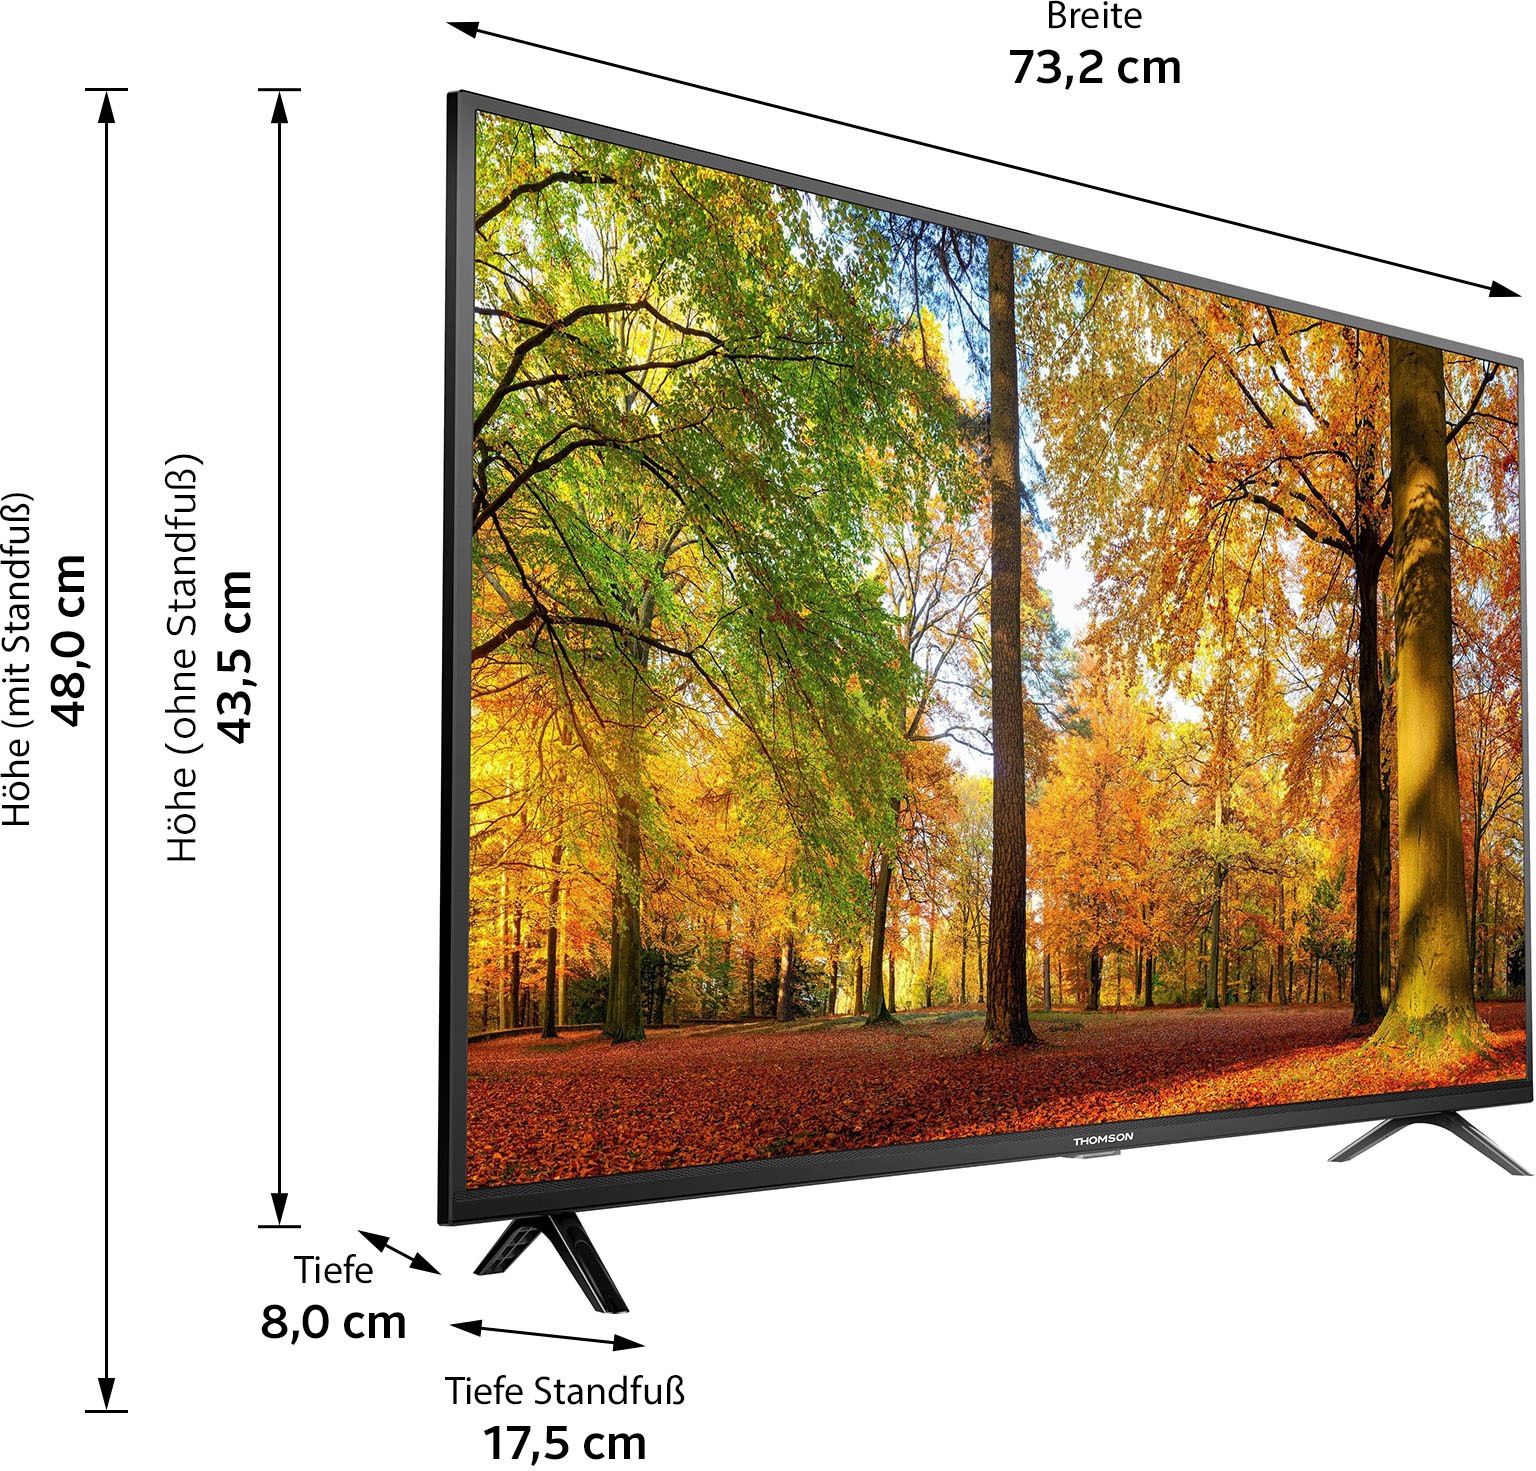 Thomson LED-Fernseher »32HD3306X1«, 80 cm/32 Zoll, HD ready